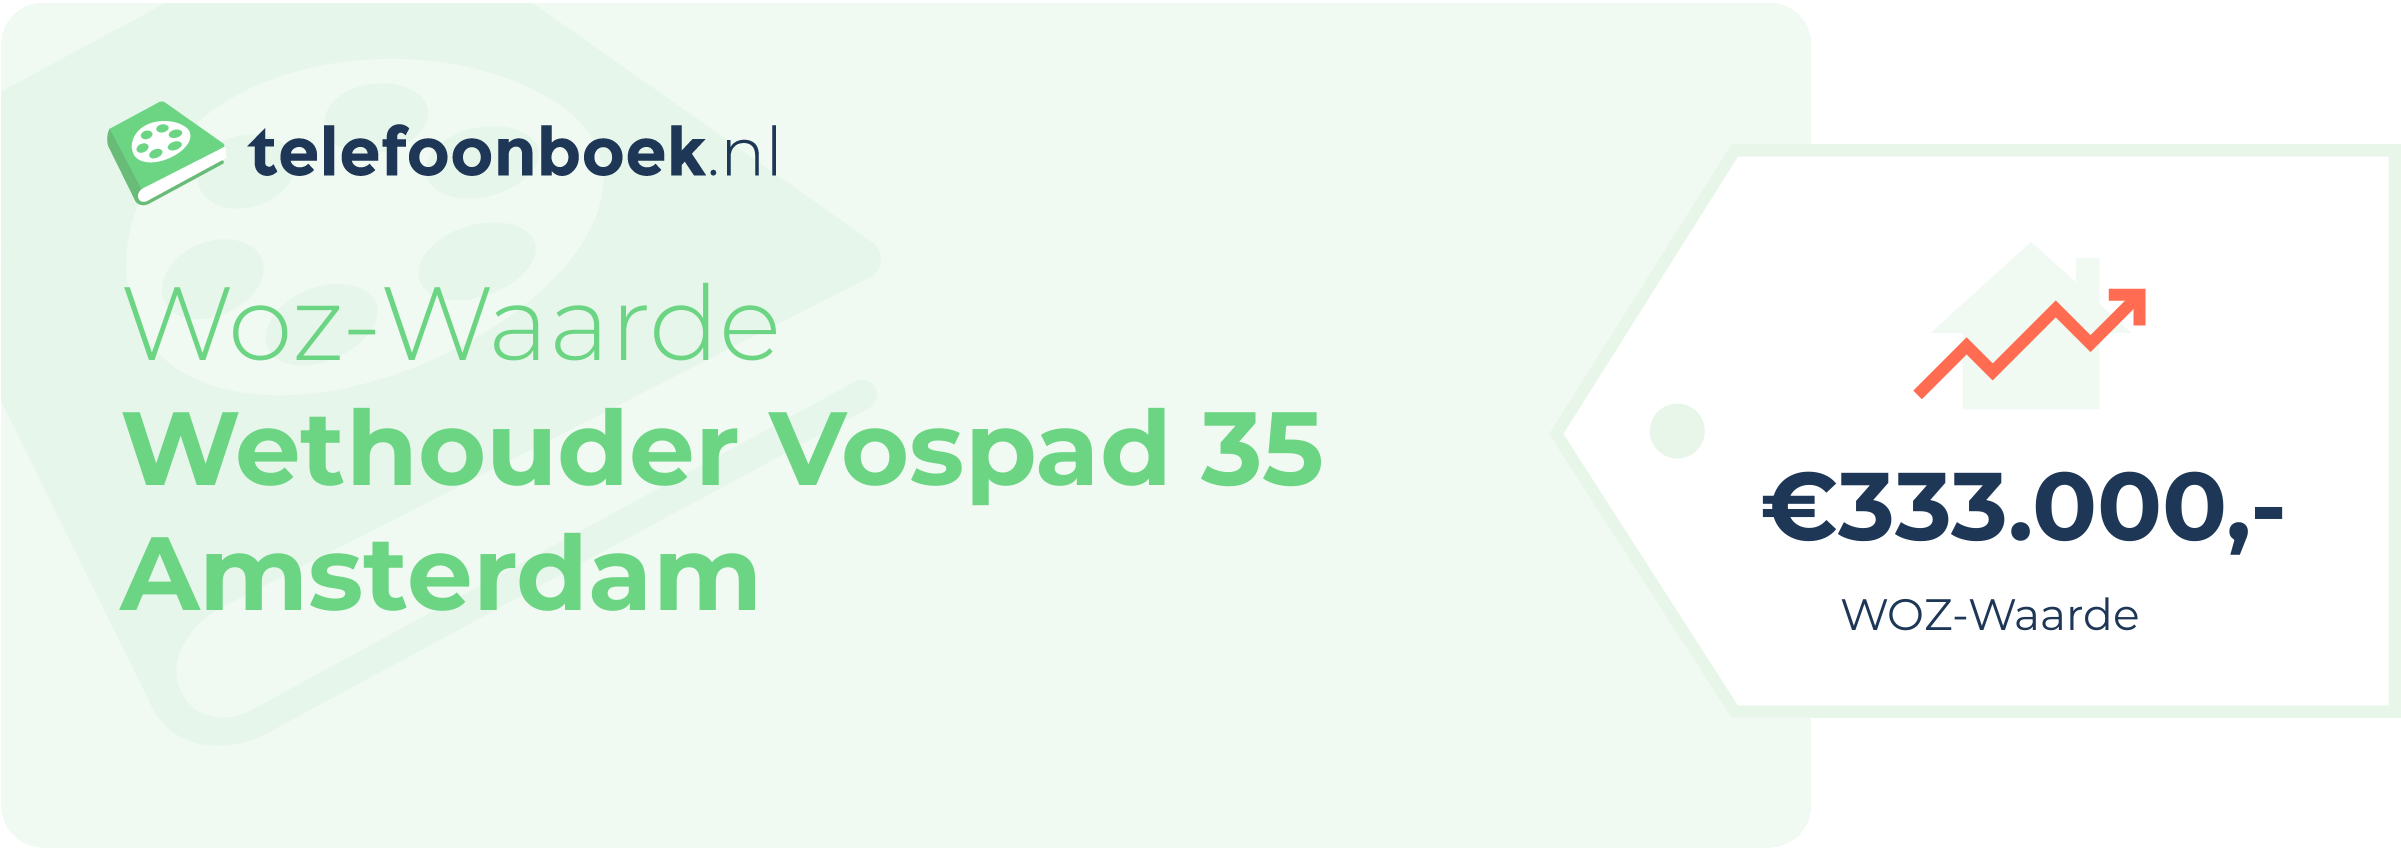 WOZ-waarde Wethouder Vospad 35 Amsterdam